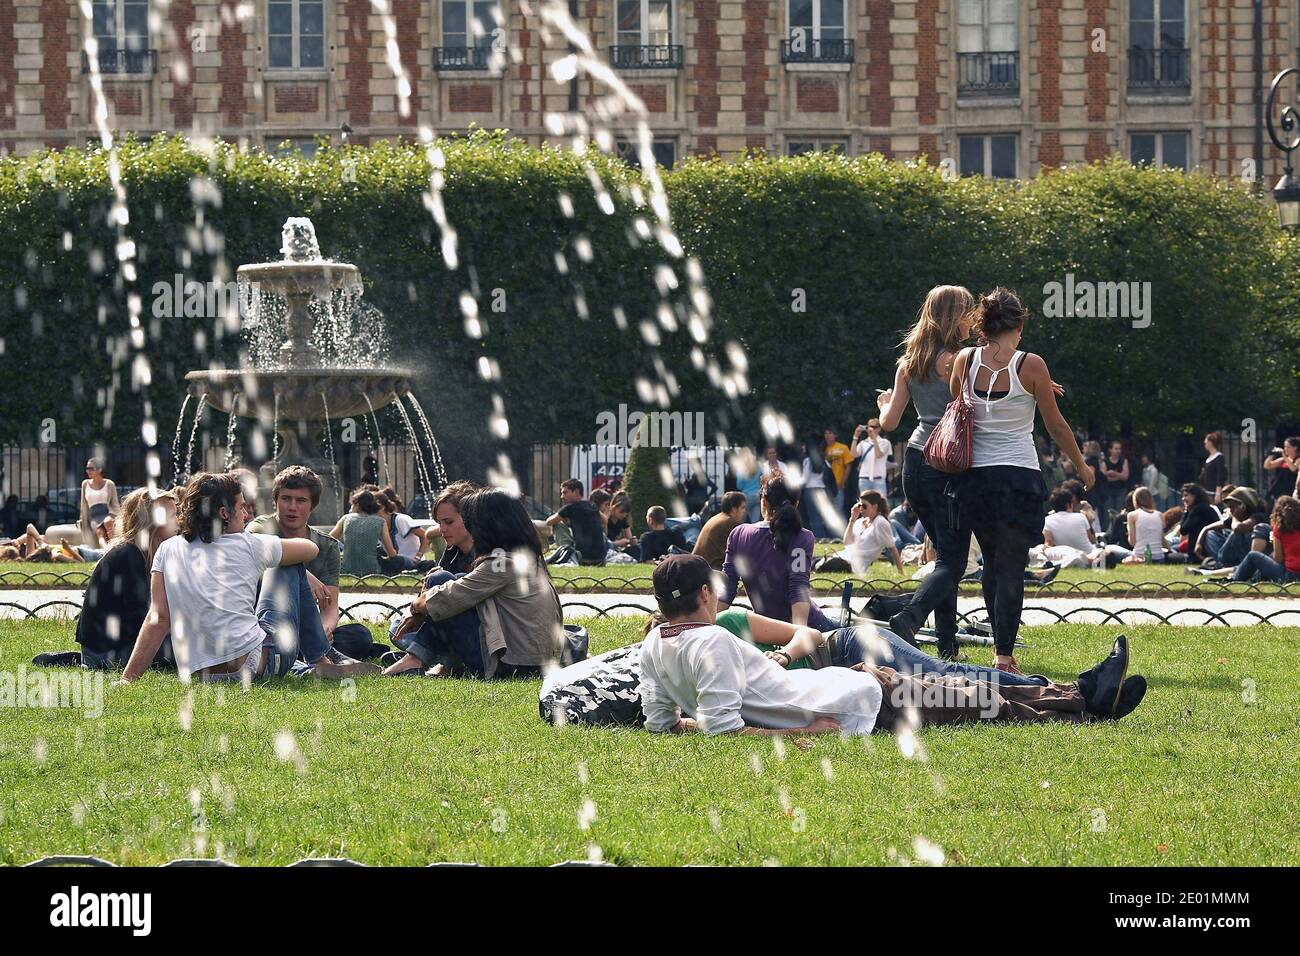 FRANCE / IIe-de-France/Paris/ le Marais /personnes se détendant sur les pelouses verdoyantes de la célèbre place des Vosges . Banque D'Images